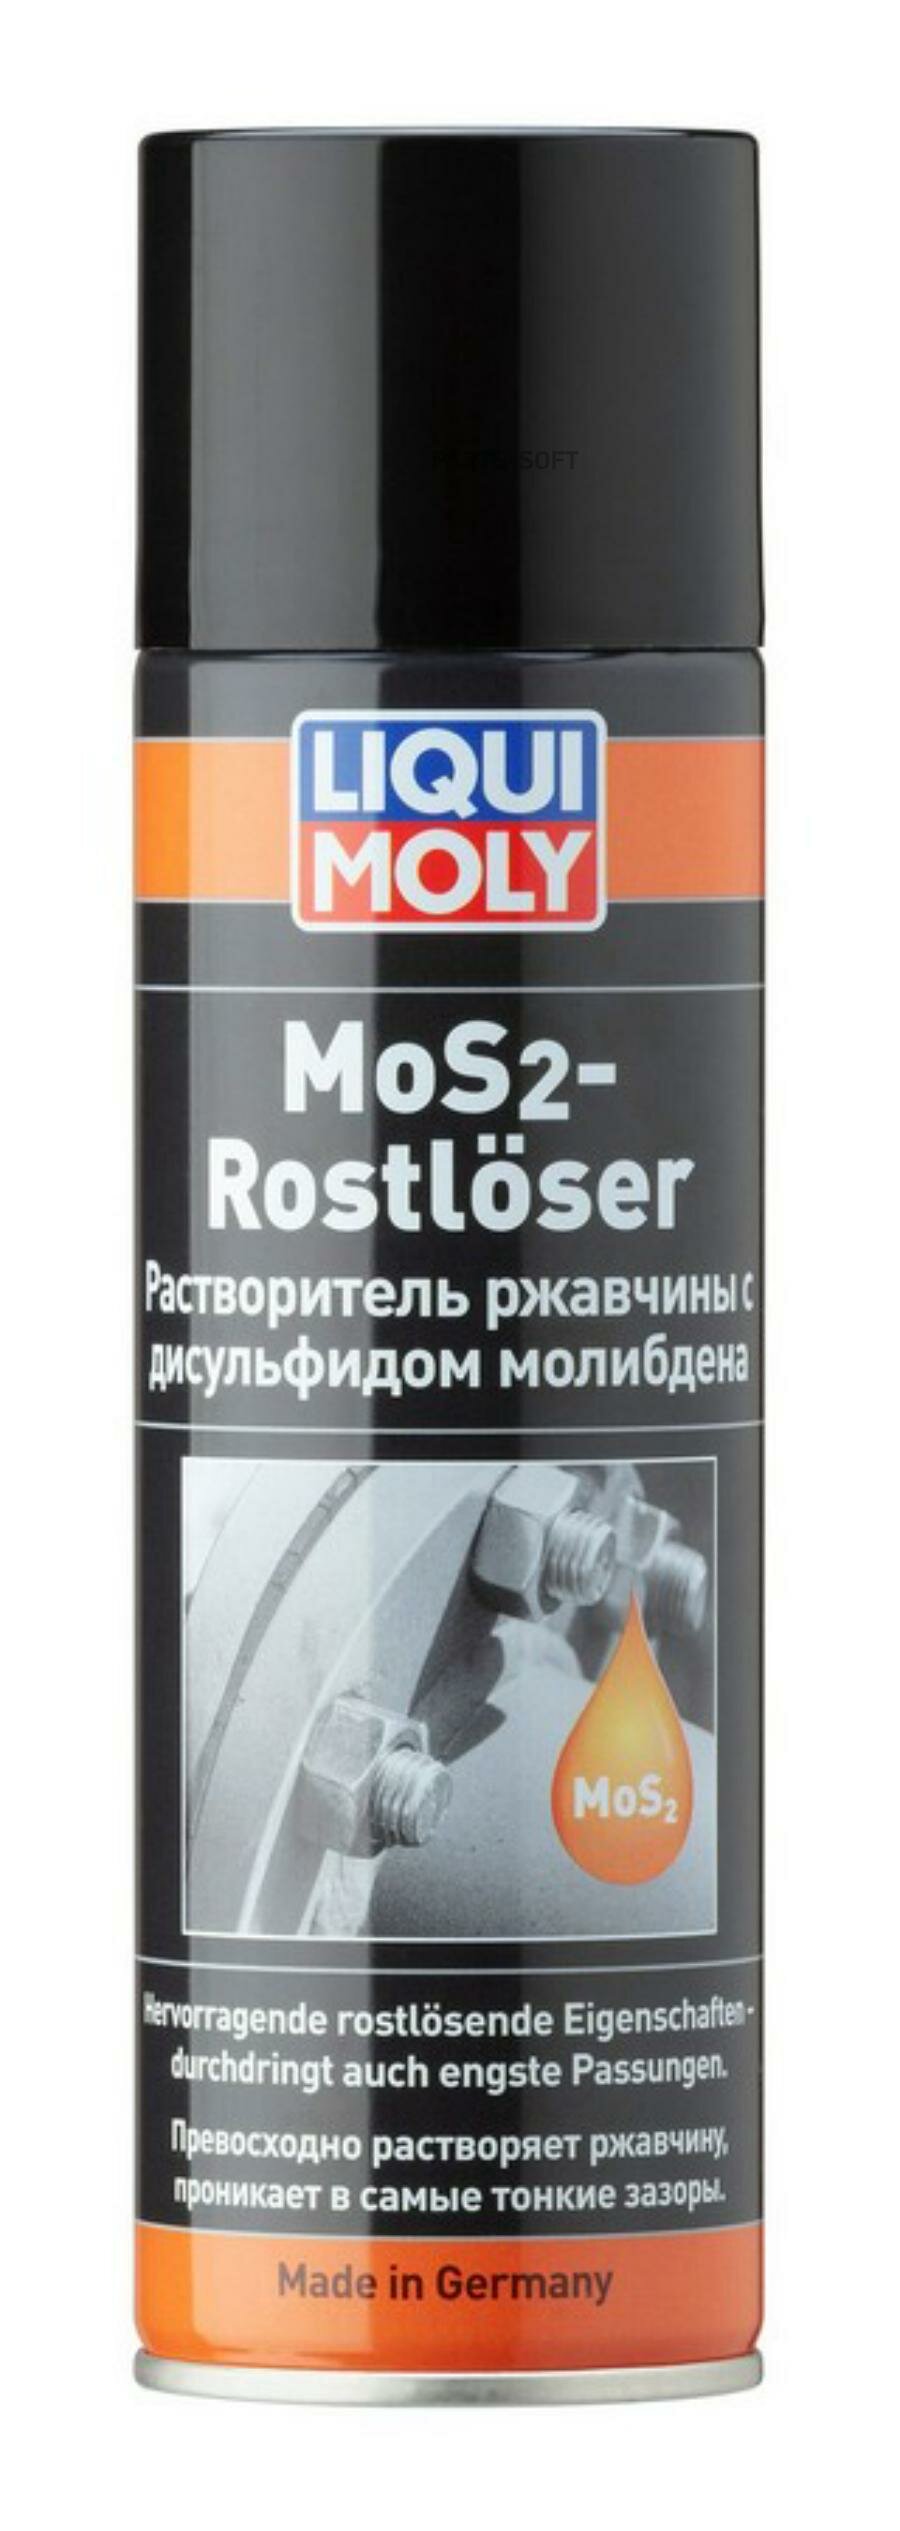 Растворитель Ржавчины С Дисульфидом Молибдена (300Ml) Mos2-Rostloser Liqui moly арт. 1986